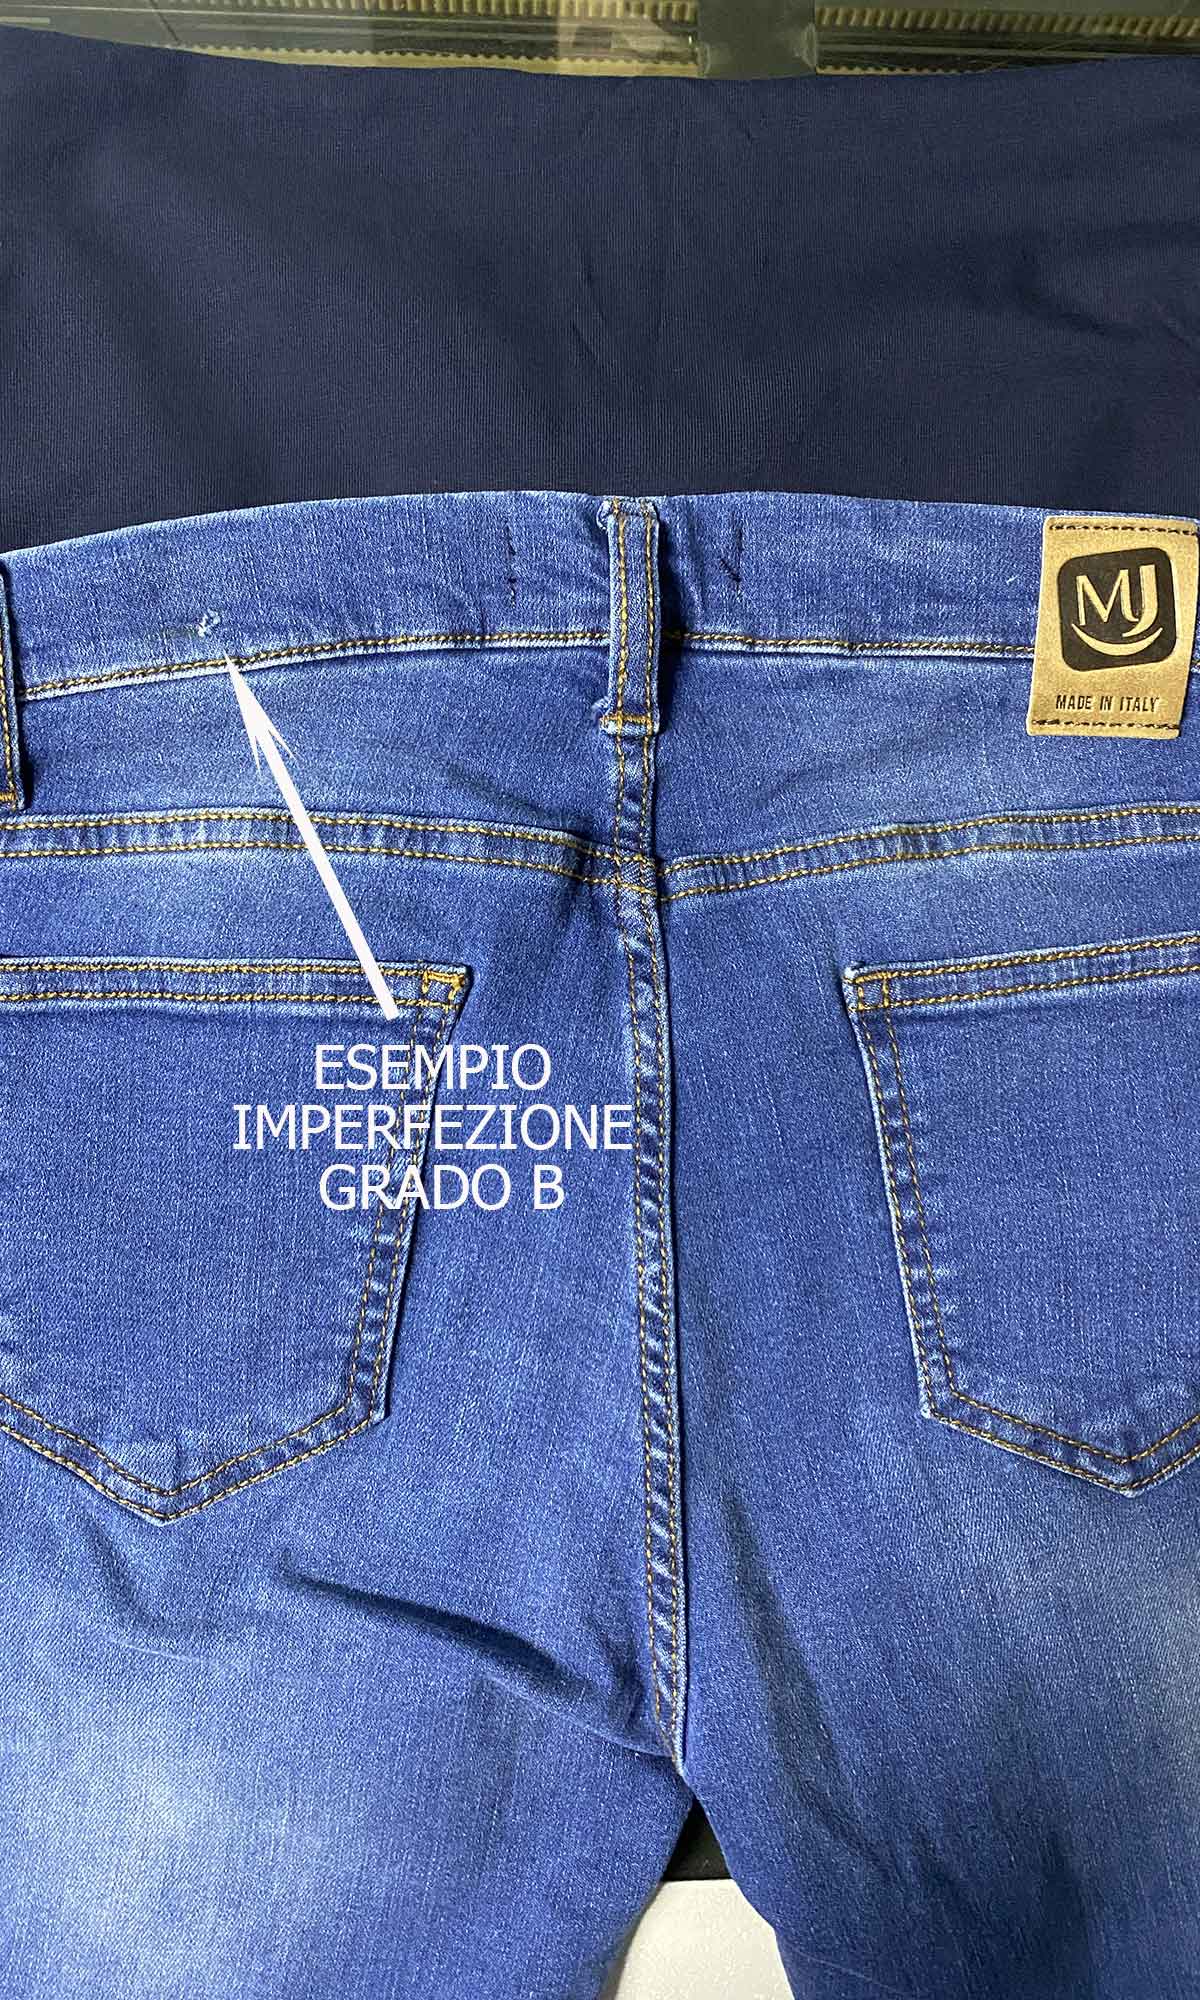 Jeans Premaman Con Piccoli Difetti - Grado A e B